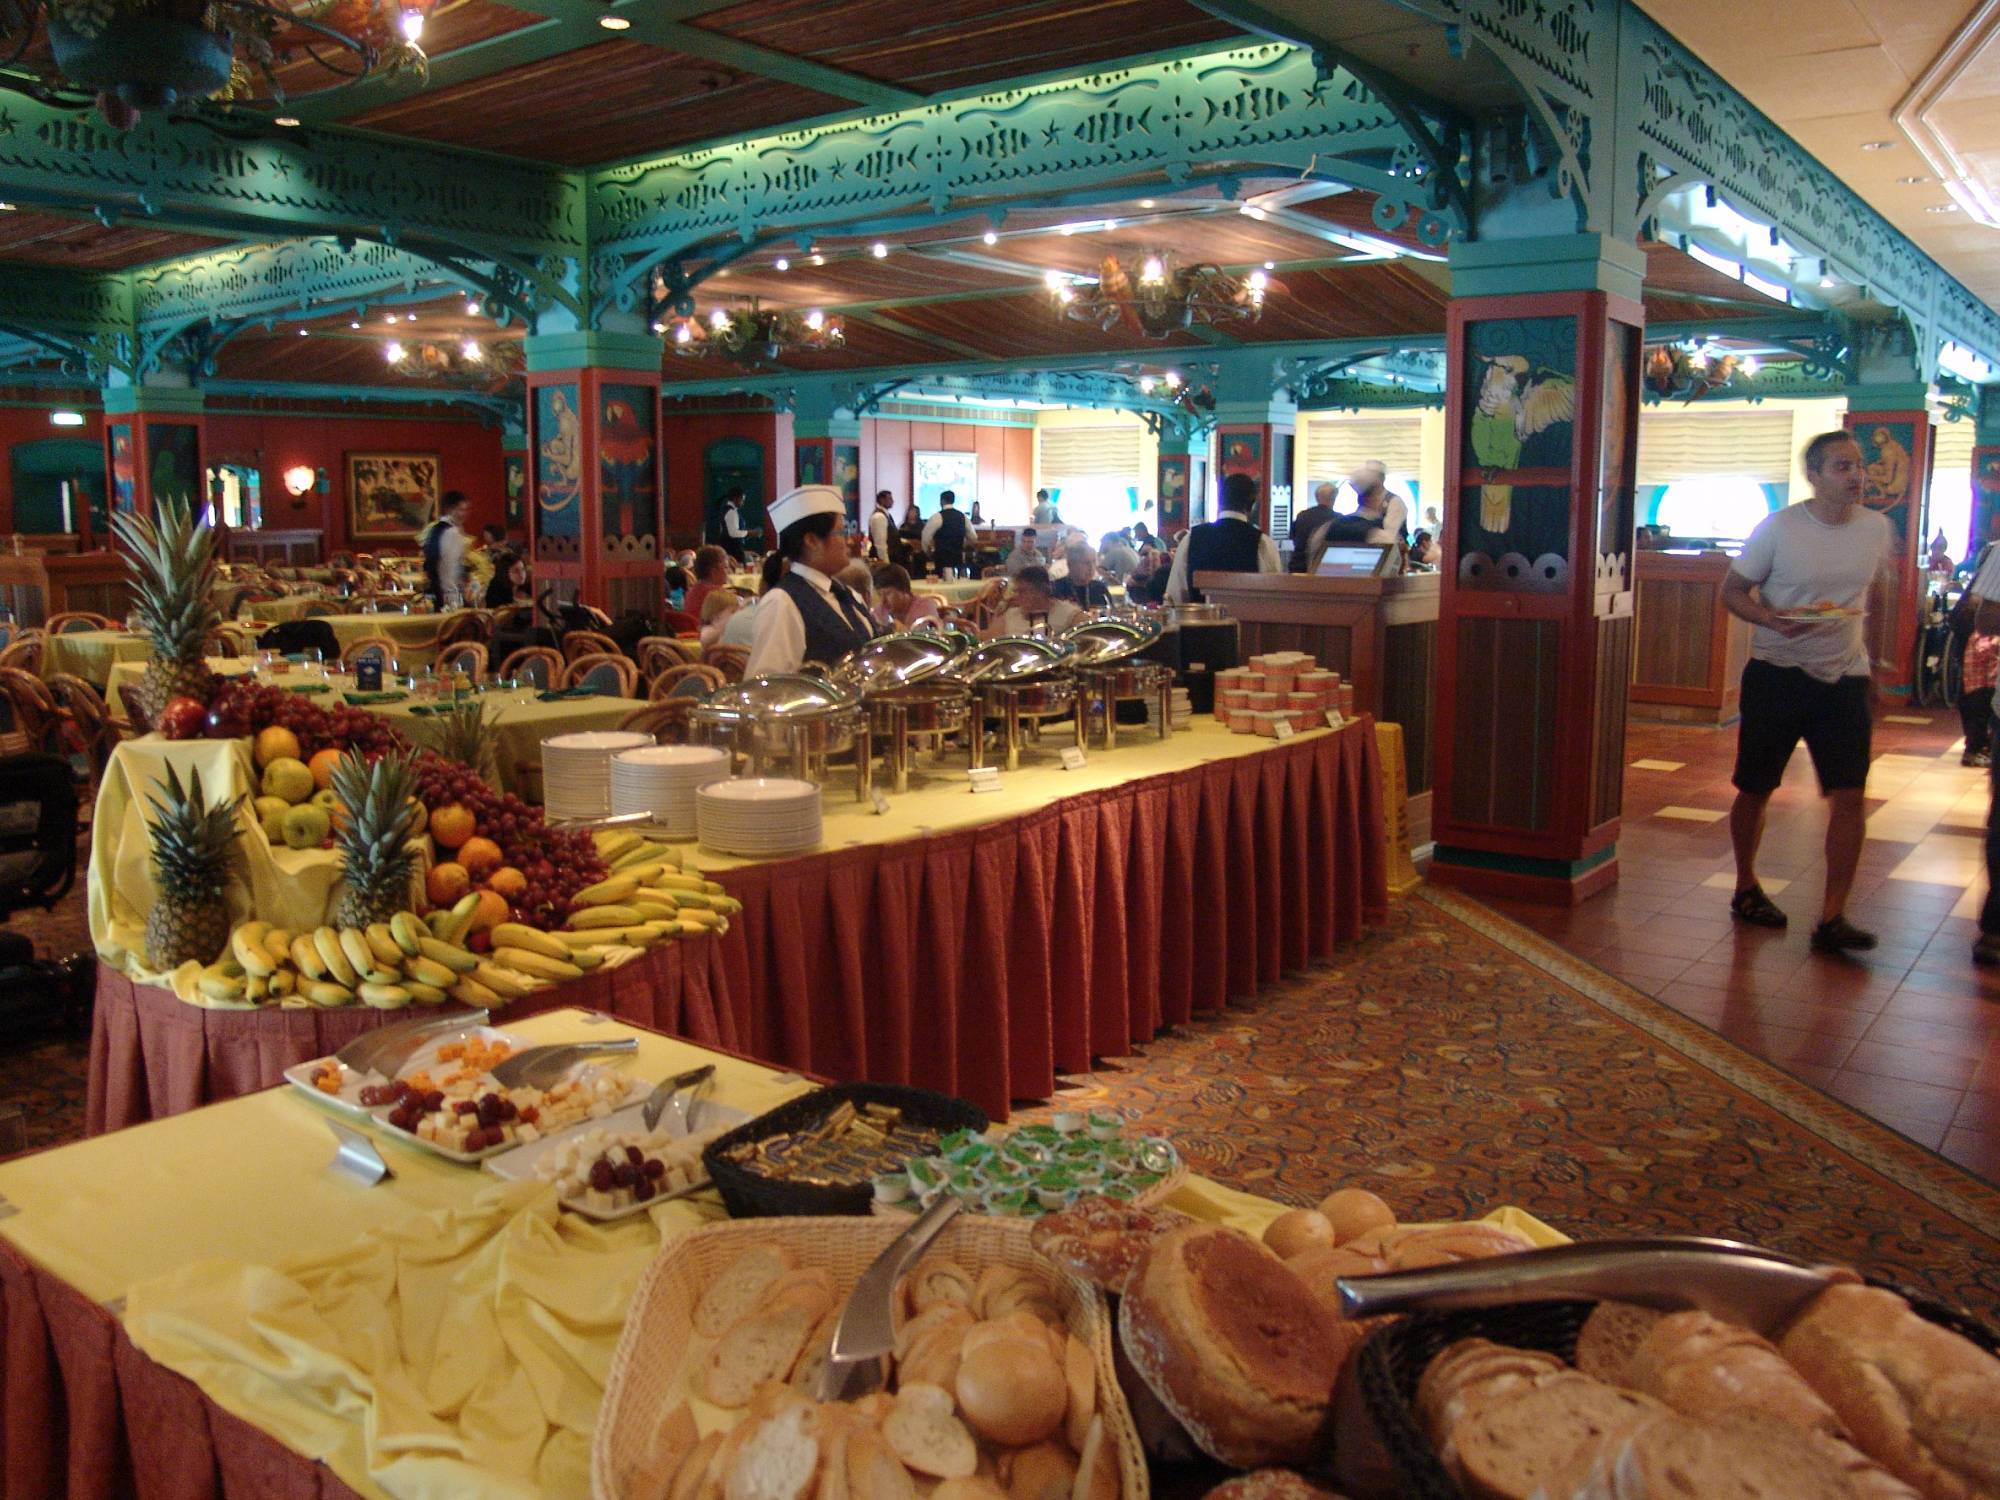 Disney Wonder - Parrot Cay buffet lunch